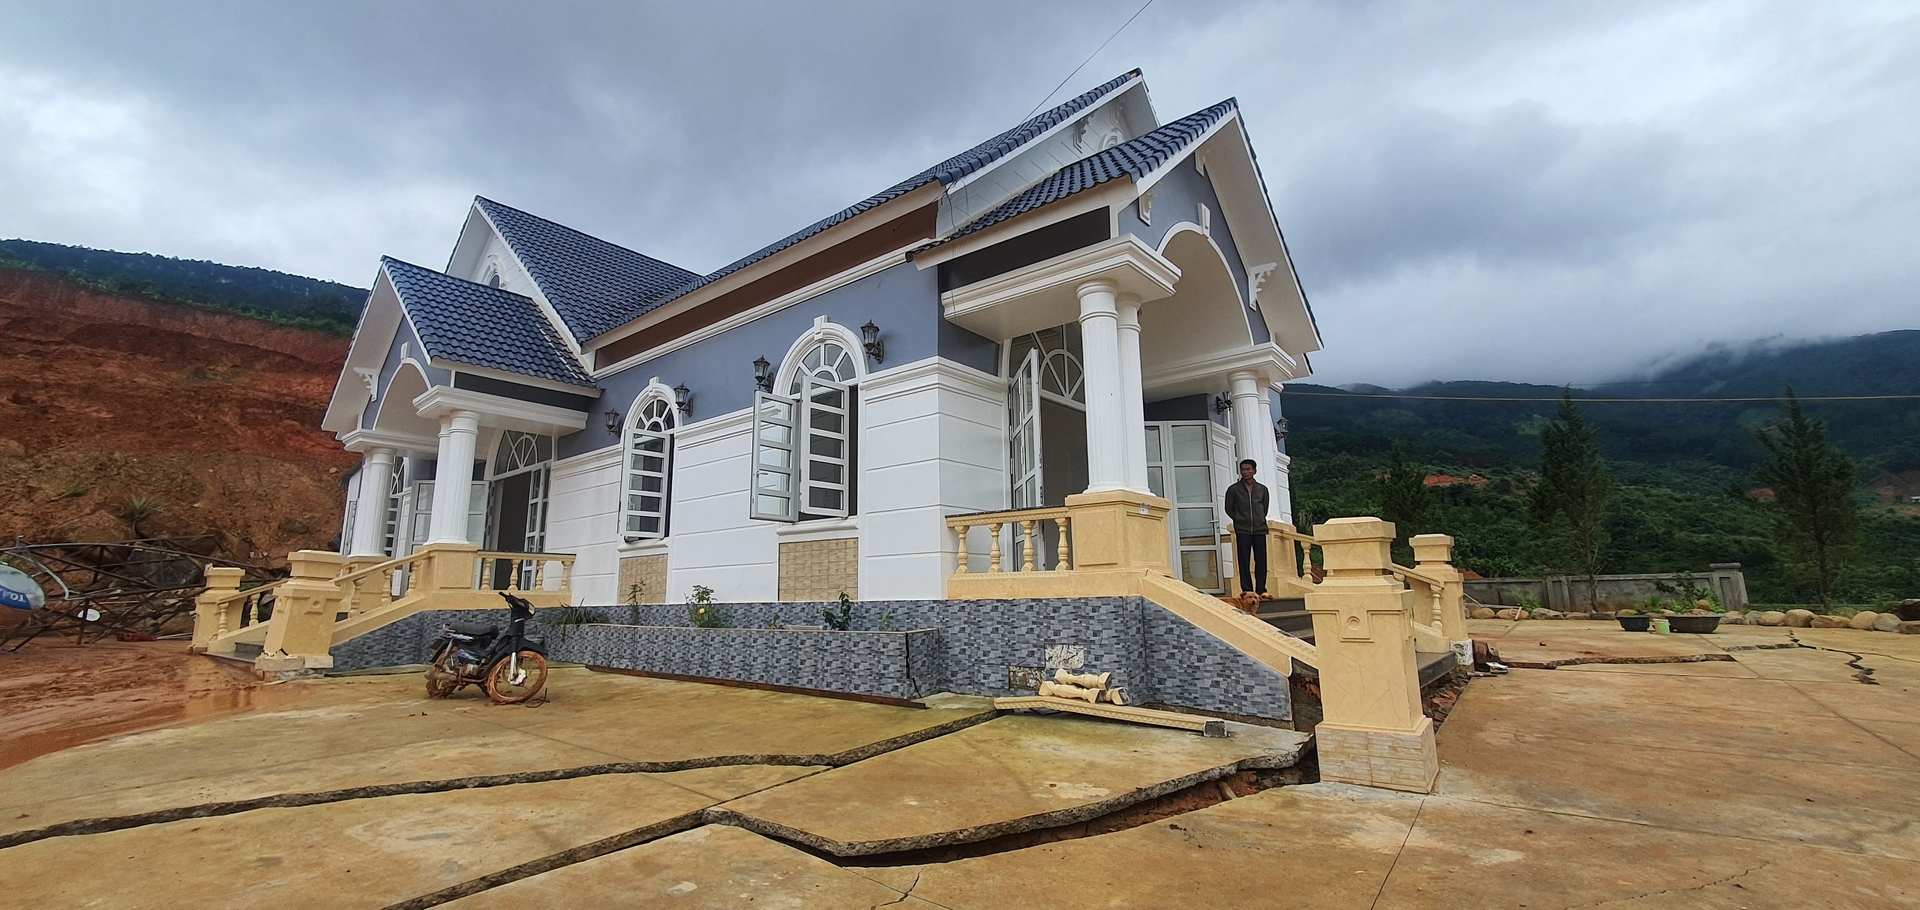 Căn nhà của ông Nguyễn Văn Thắng bị ảnh hưởng nghiêm trọng do tình trạng sạt lở đất.